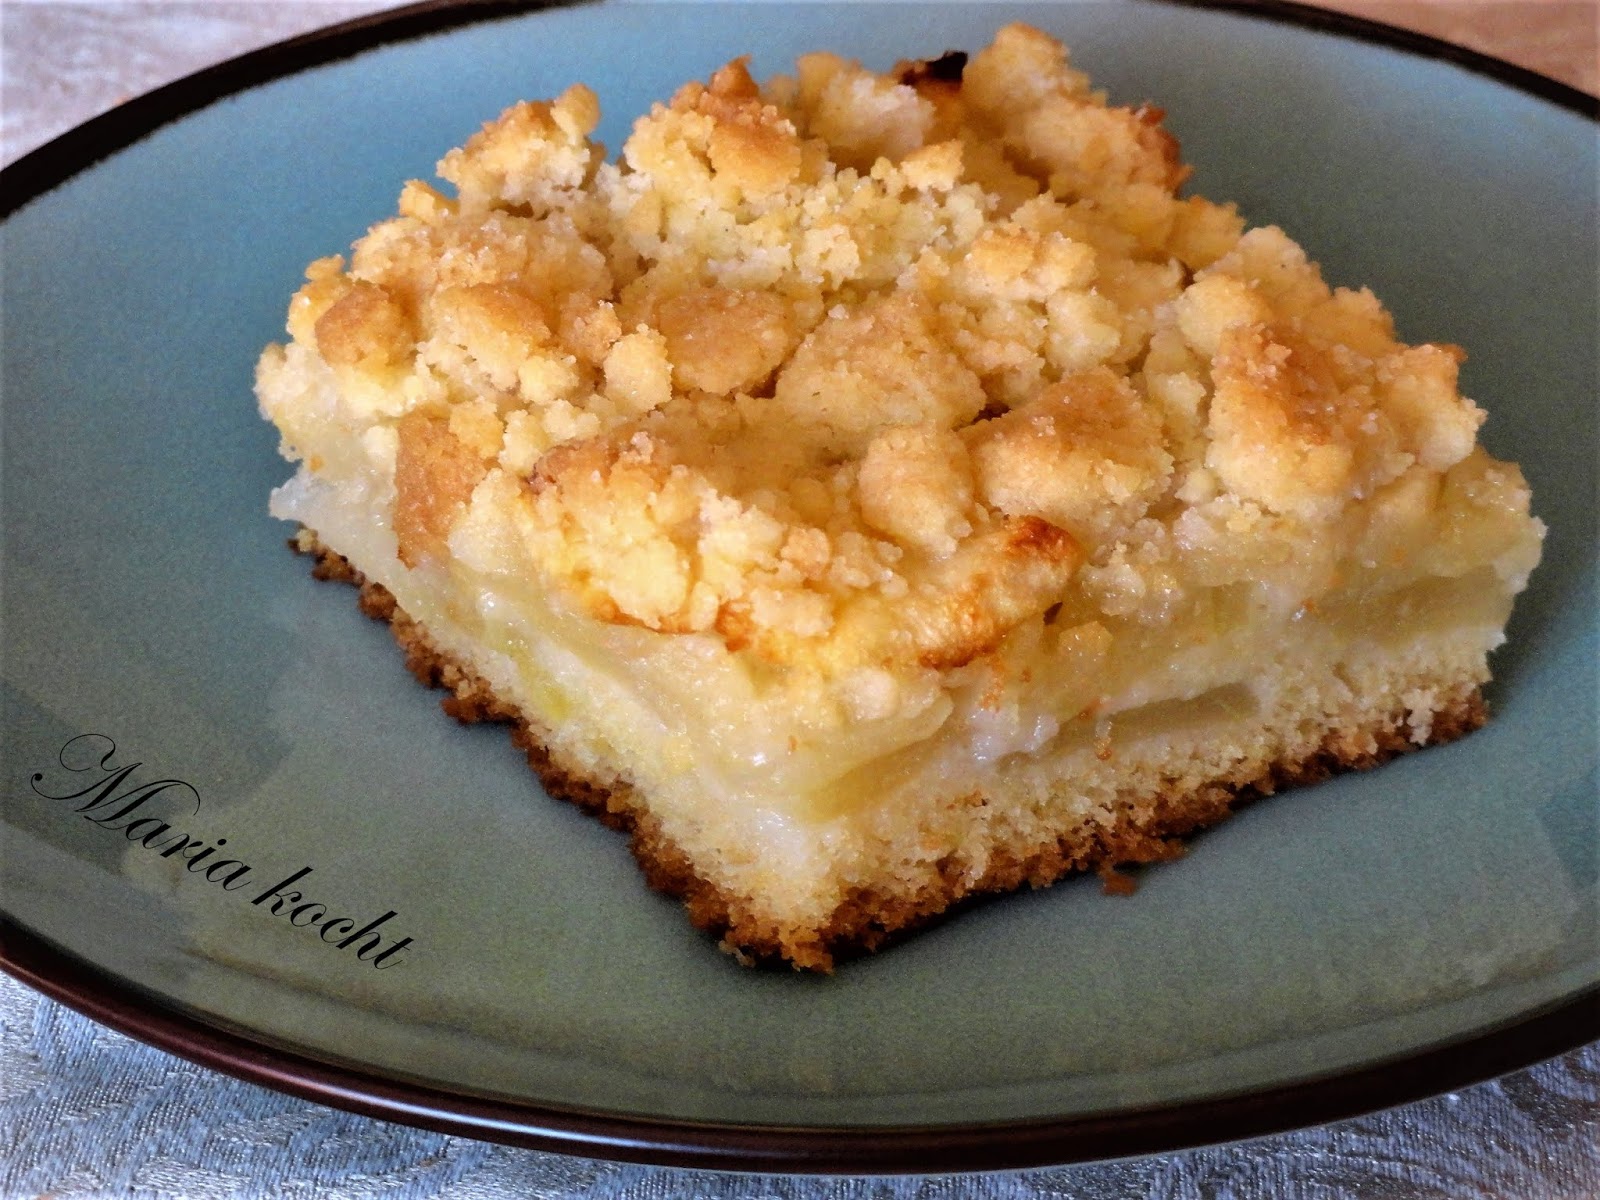 Maria kocht: Apfelkuchen mit Streuseln / Morzsás almás sütemény